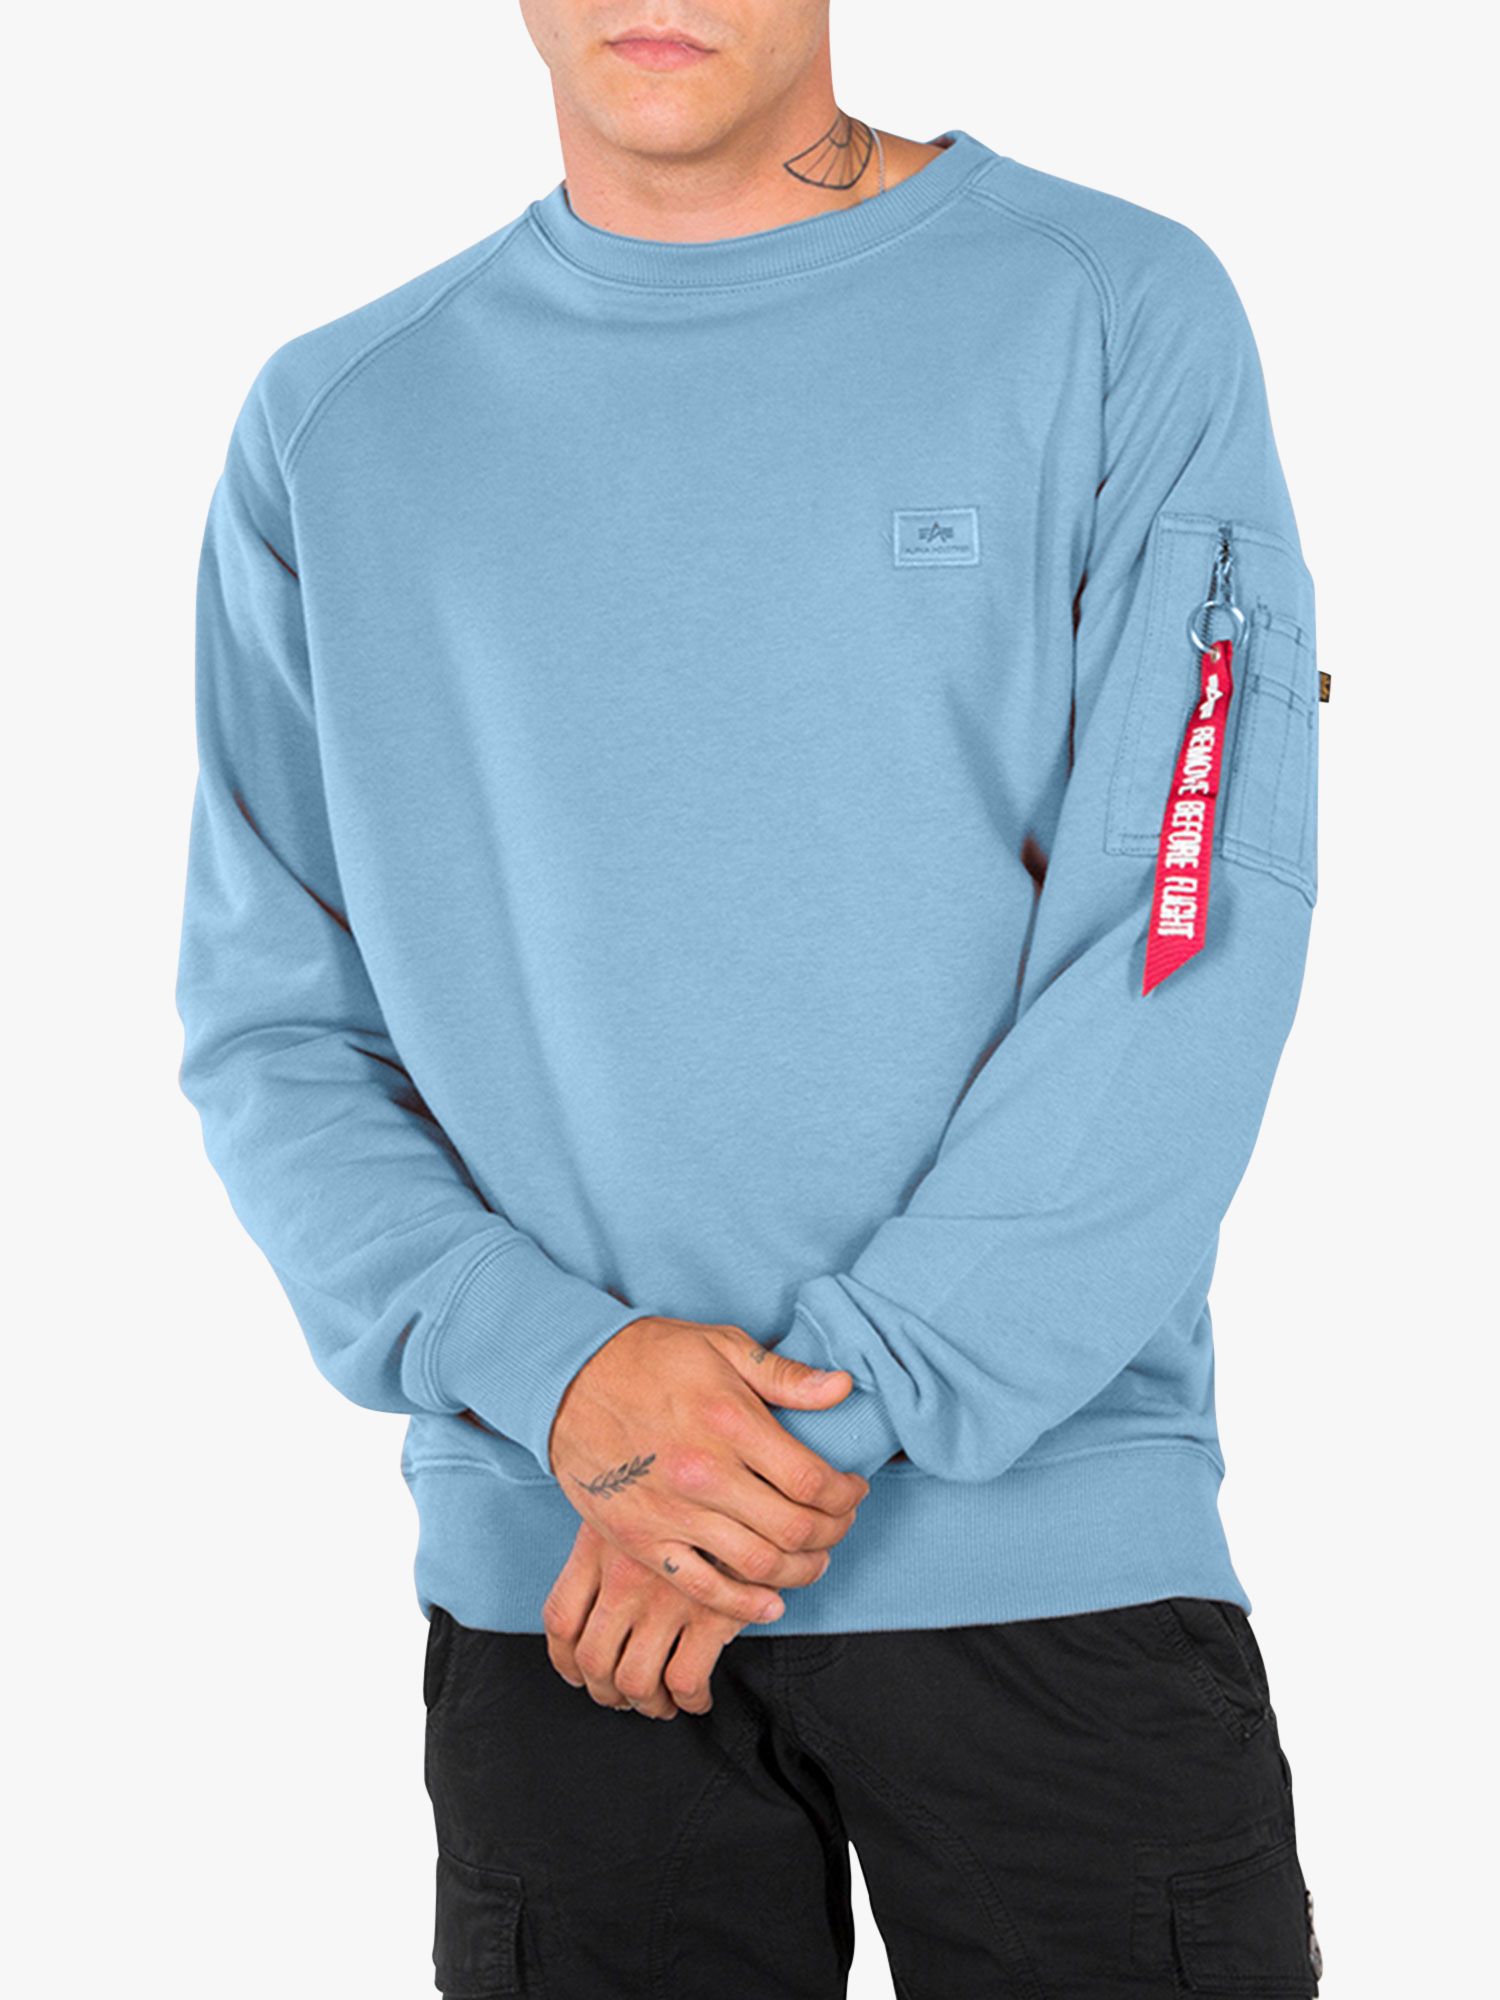 Men's Sweatshirts, Zip Neck & Crew Neck Sweatshirts